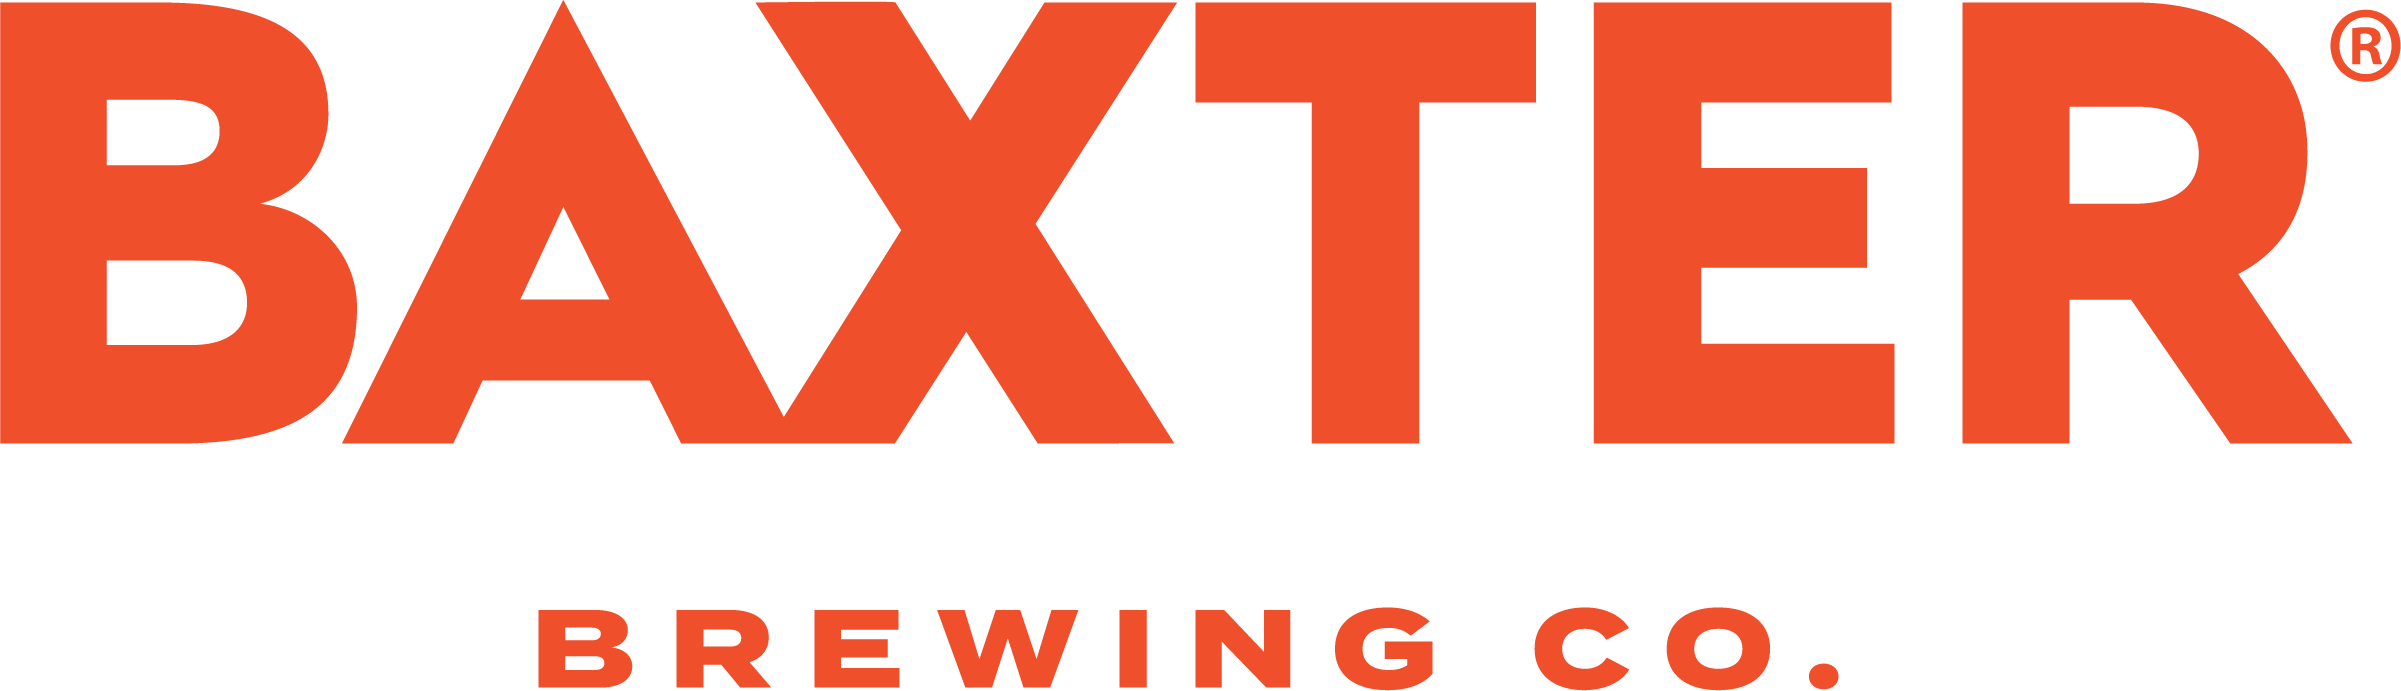 Baxter - logo - orange (1).png